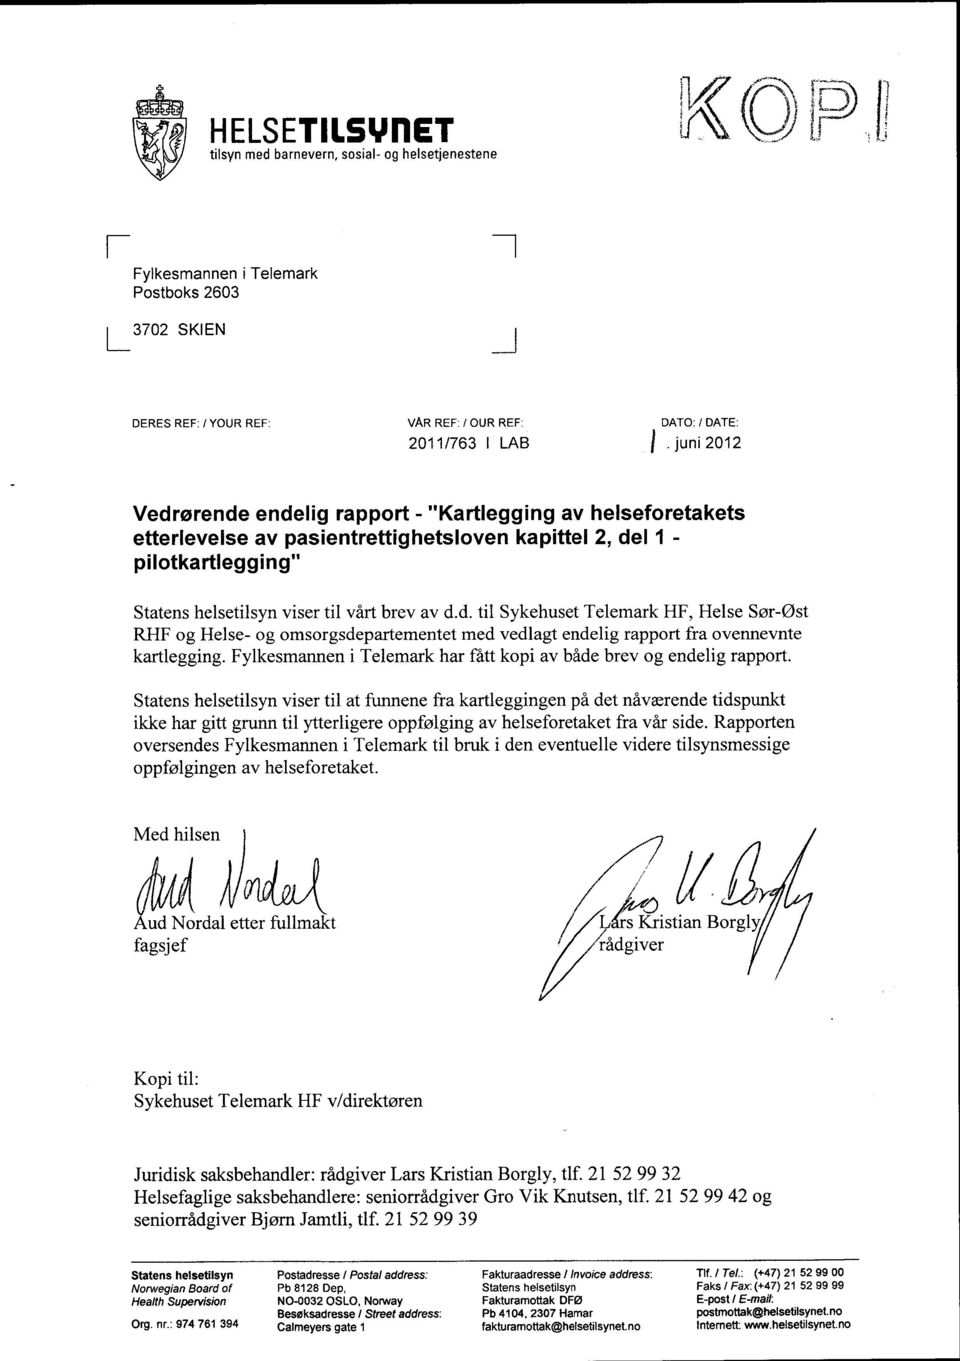 Fylkesmannen i Telemark har fått kopi av både brev og endelig rapport.